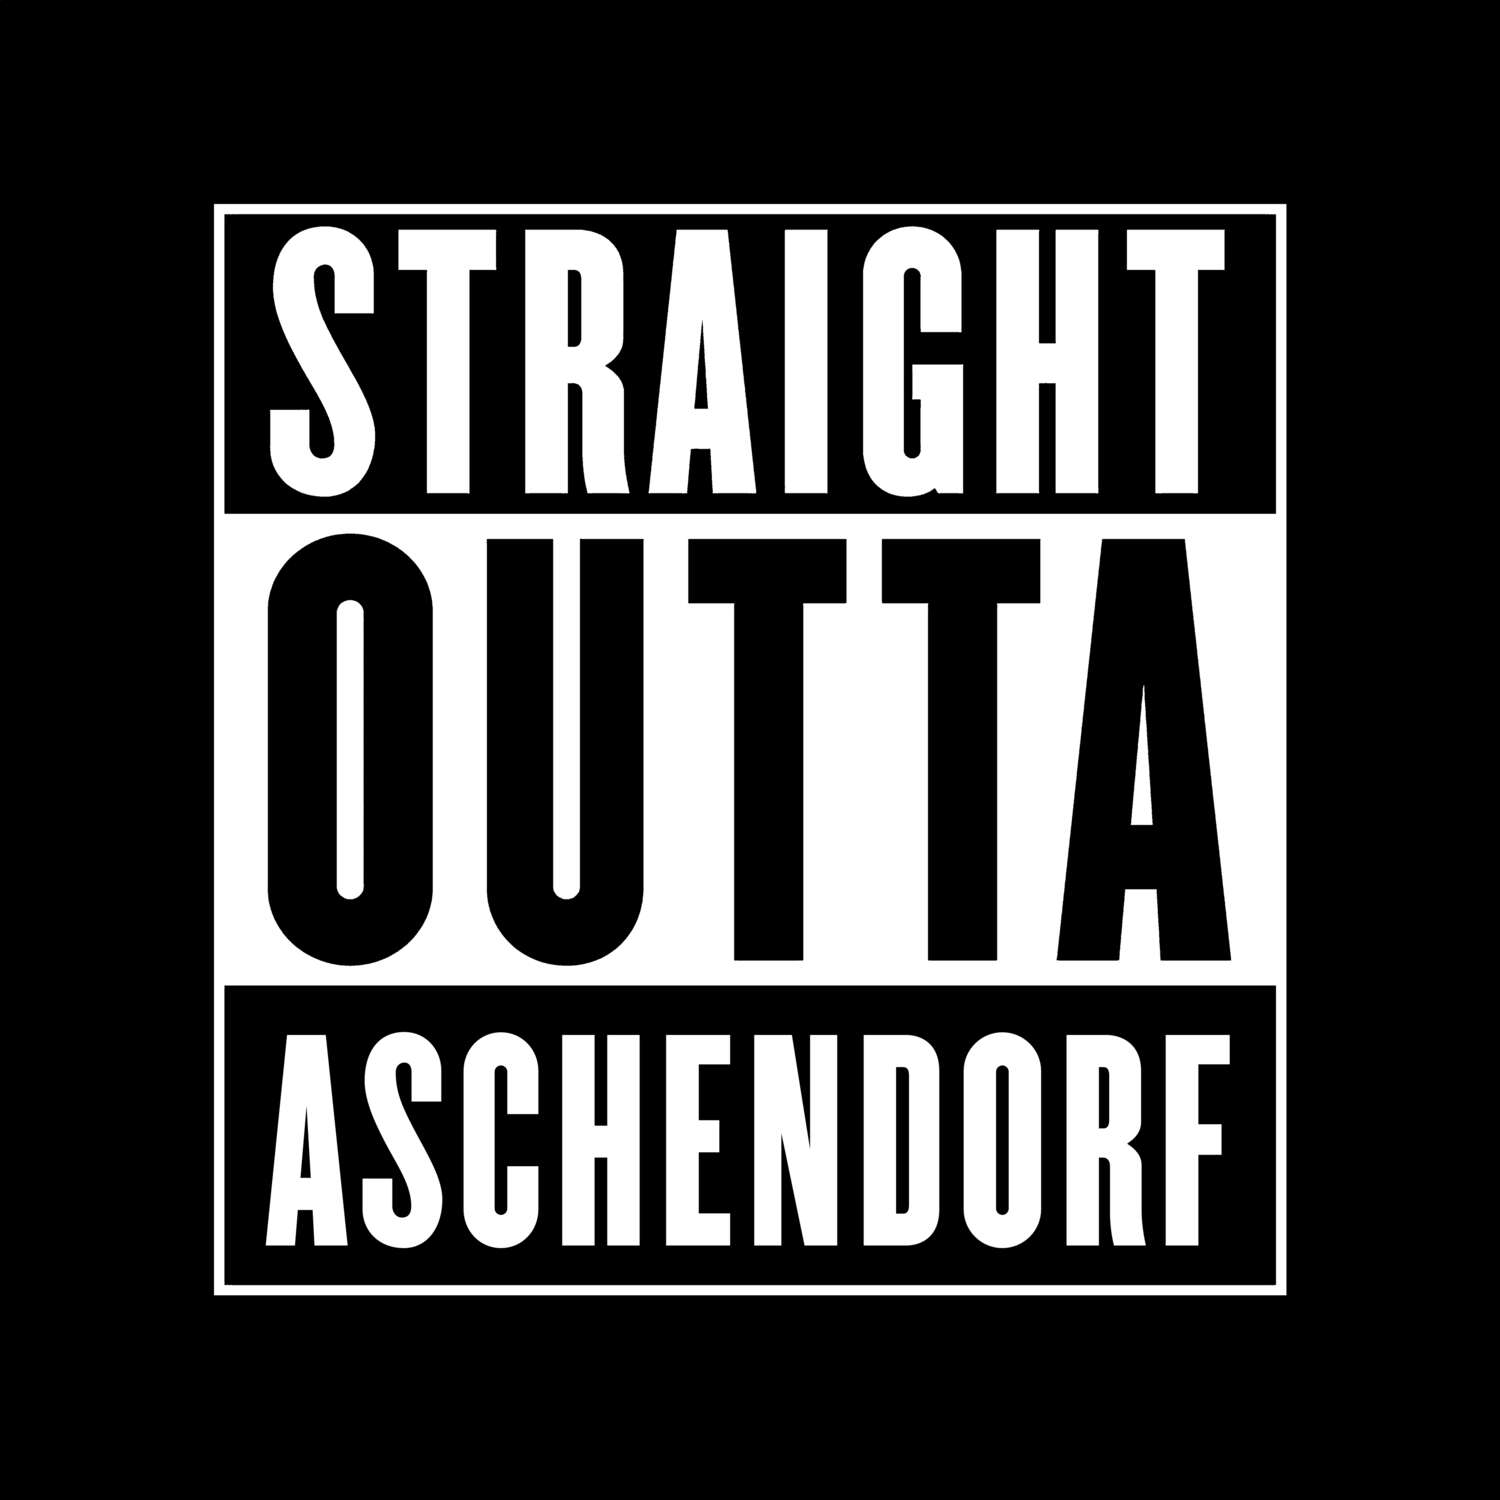 Aschendorf T-Shirt »Straight Outta«